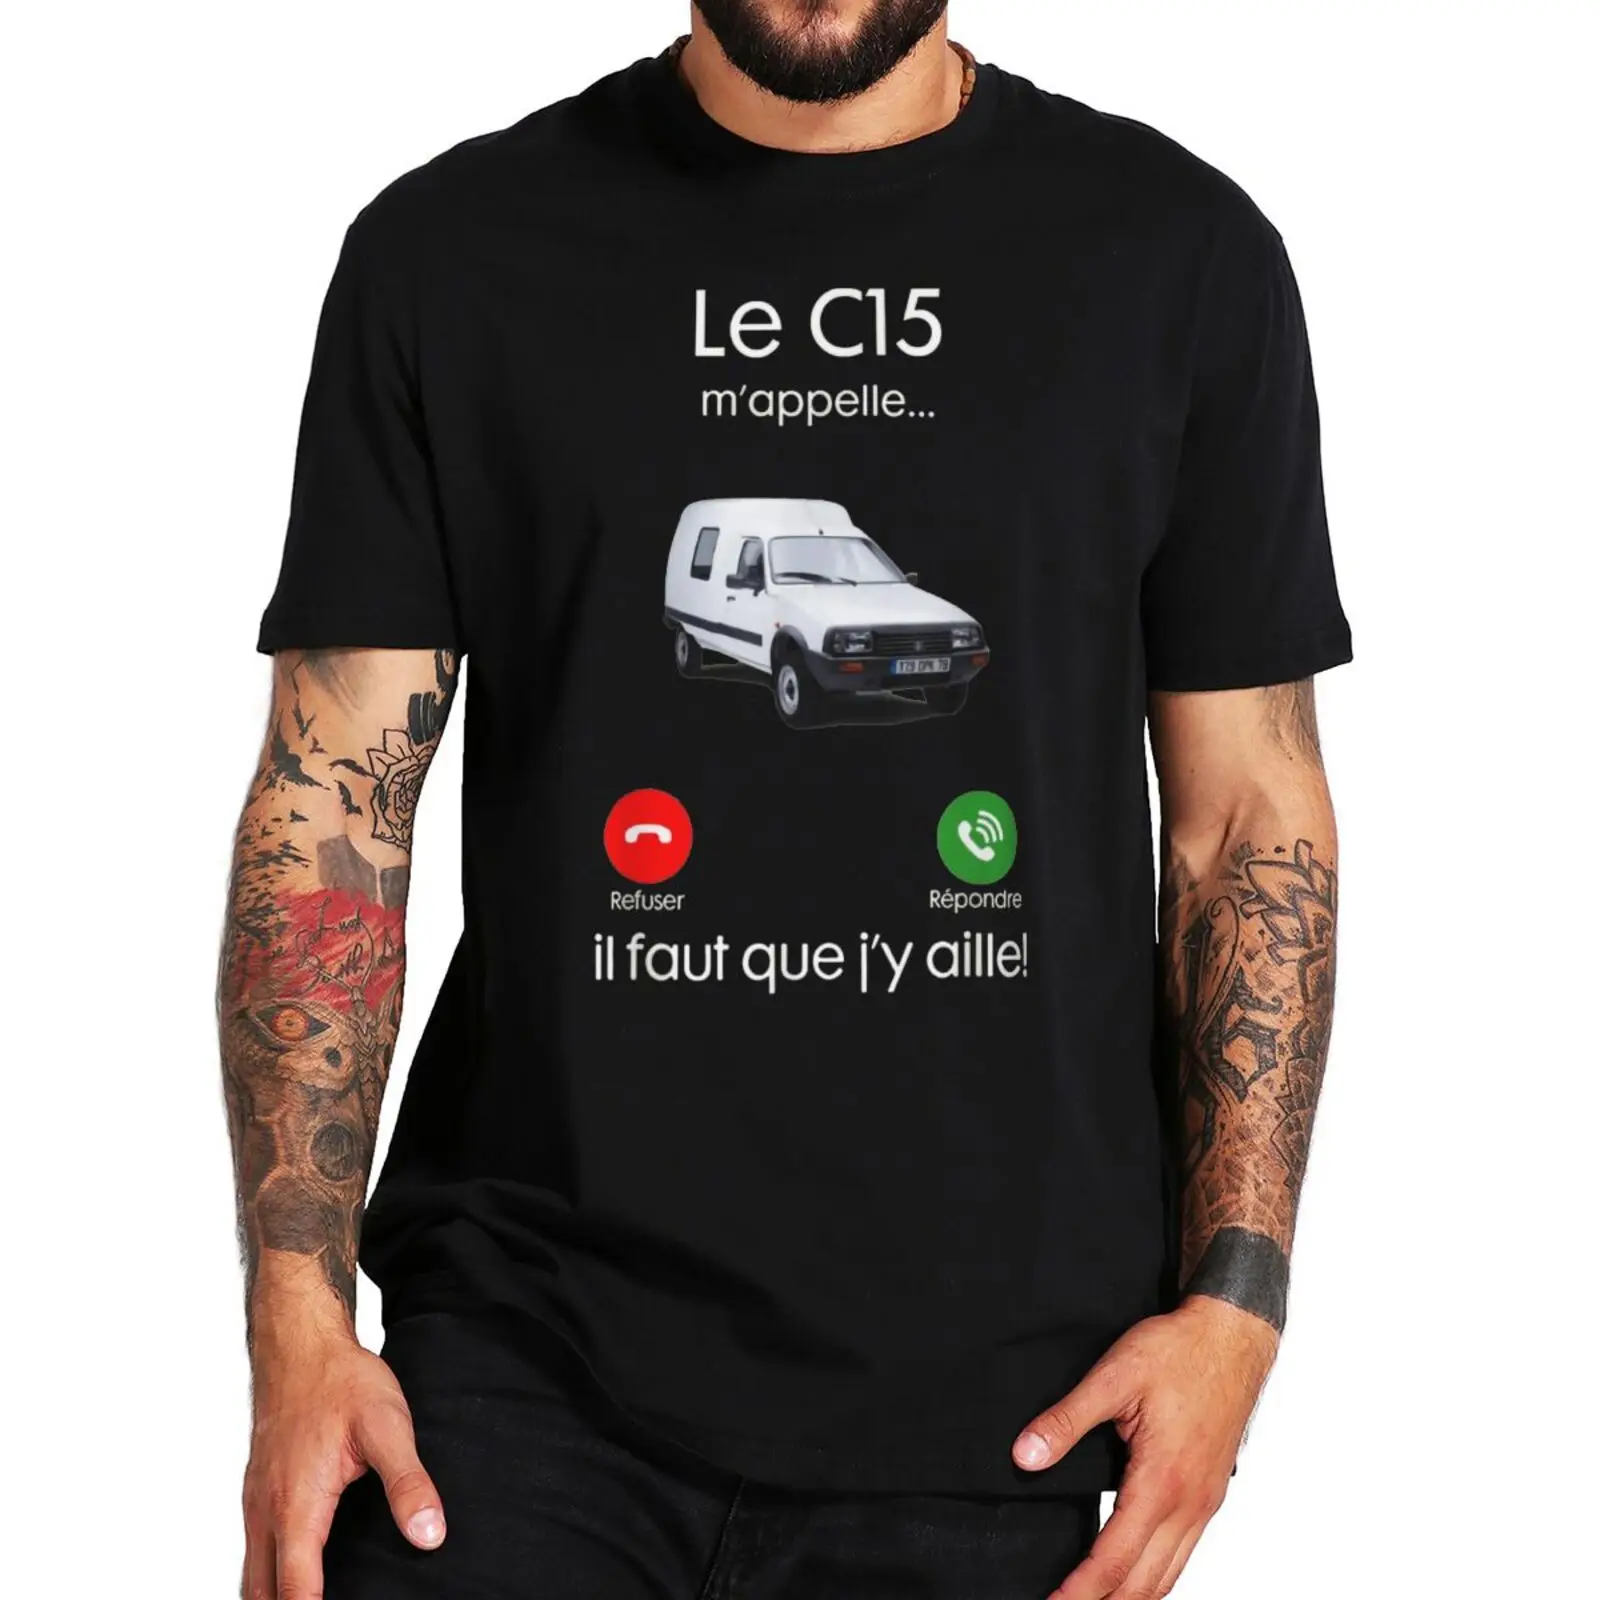 

Классическая футболка C15 с надписью «Call Me», я должен пойти на забавную французскую надпись, футболка для любителей автомобиля, 100% хлопок, европейский размер